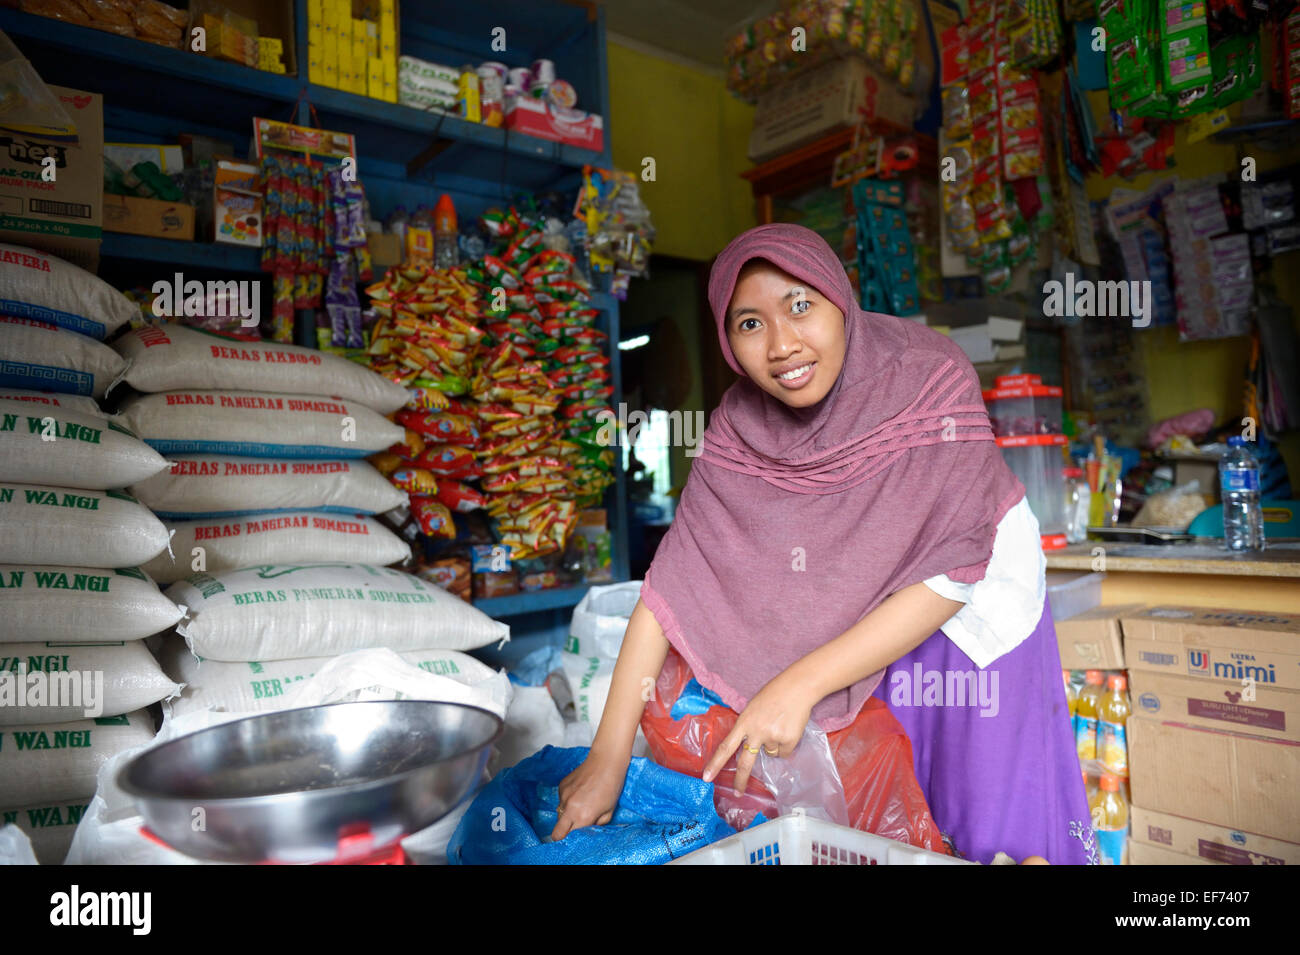 Jeune femme avec voile, assistant dans une petite épicerie, Lam, Rukam Rozma sous-district, Aceh, Indonésie Banque D'Images